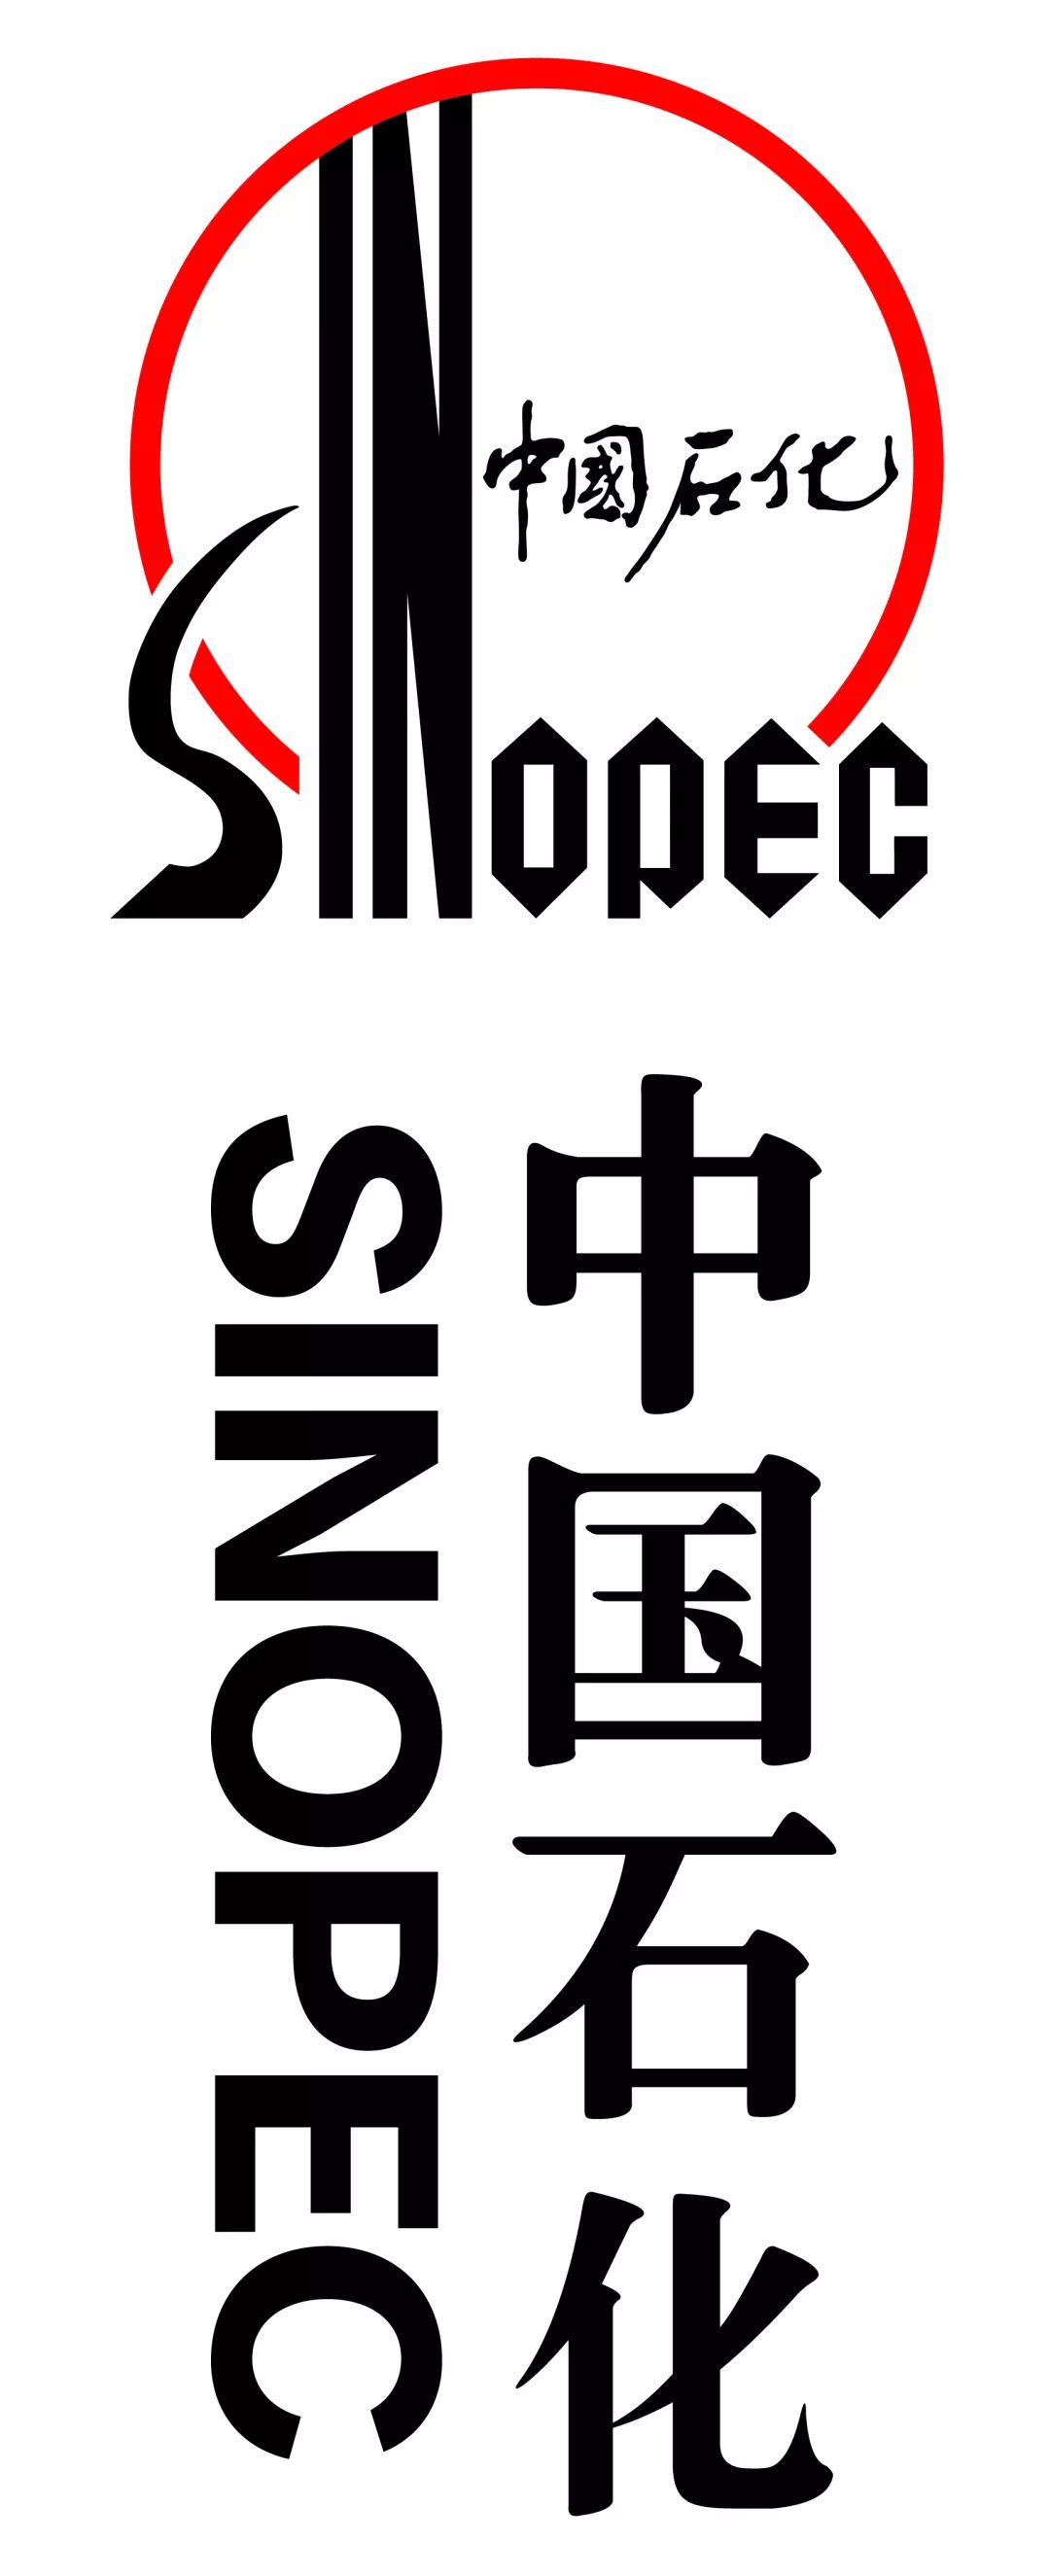 竖式组合不可随意加粗,变形,调整比例中国石化品牌标识组合存在只有